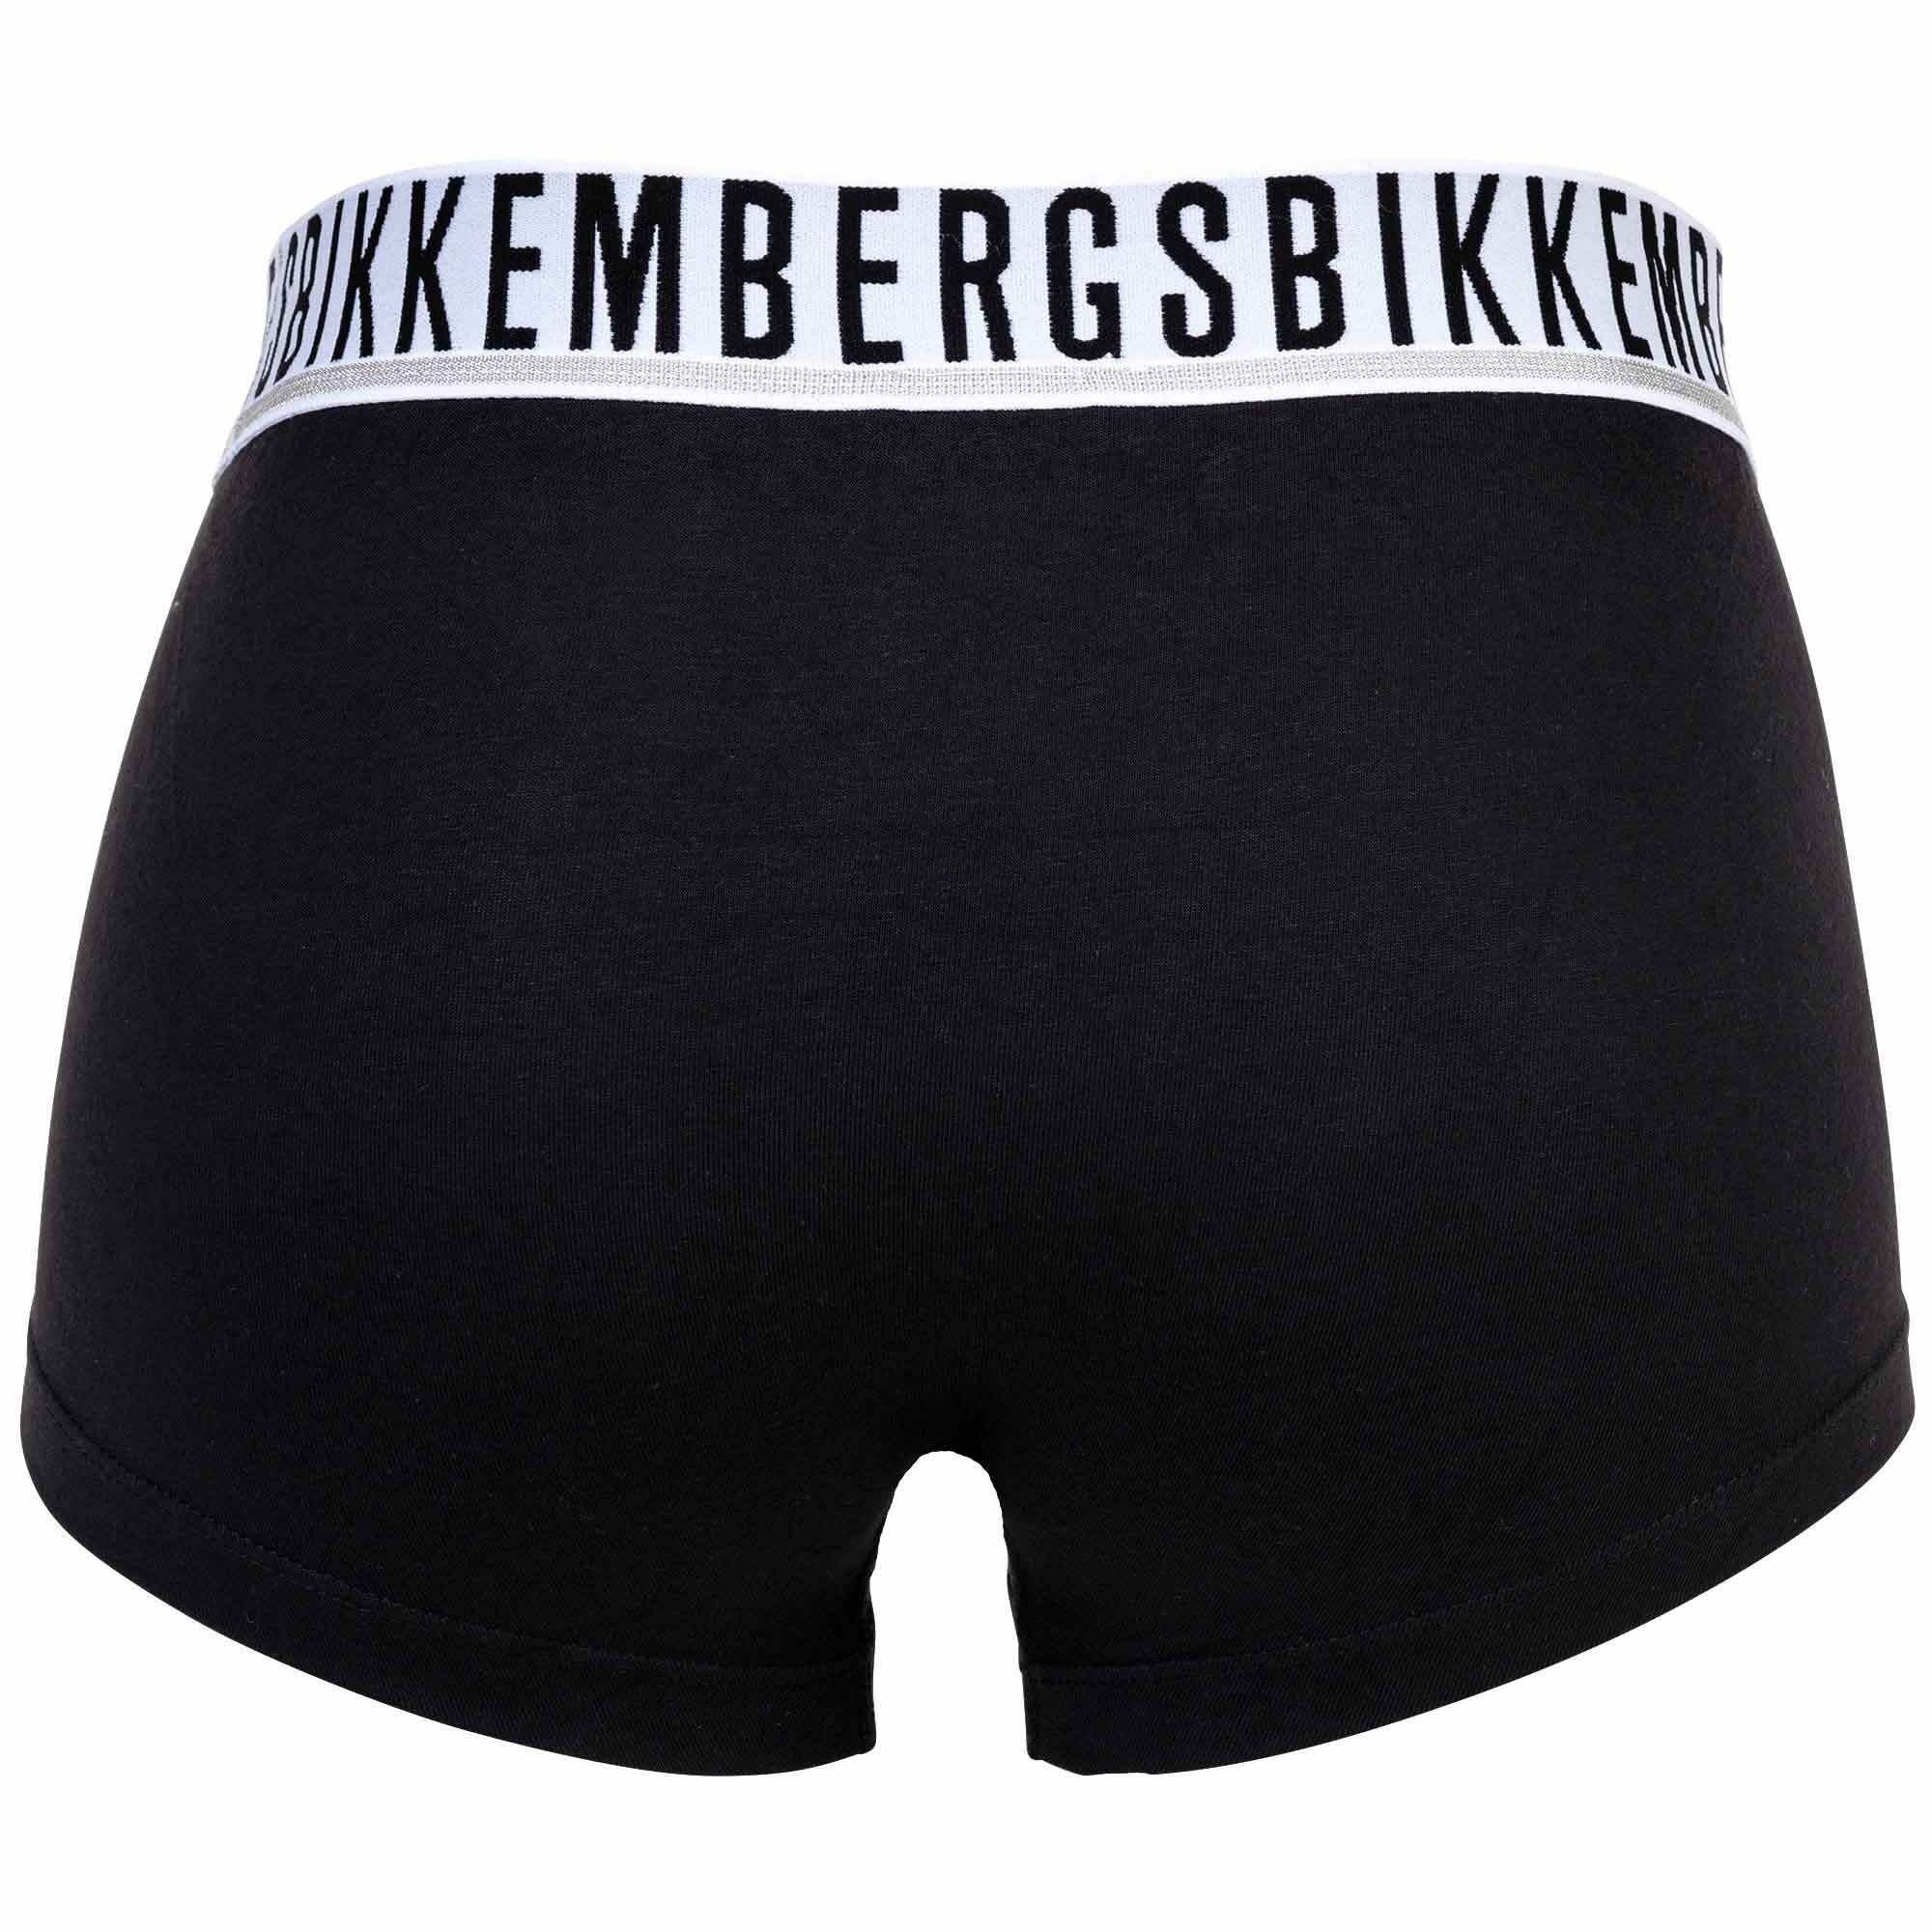 Boxer Bikkembergs Schwarz 3er Pack TRUNKS TRI-PACK - Herren Boxershorts,